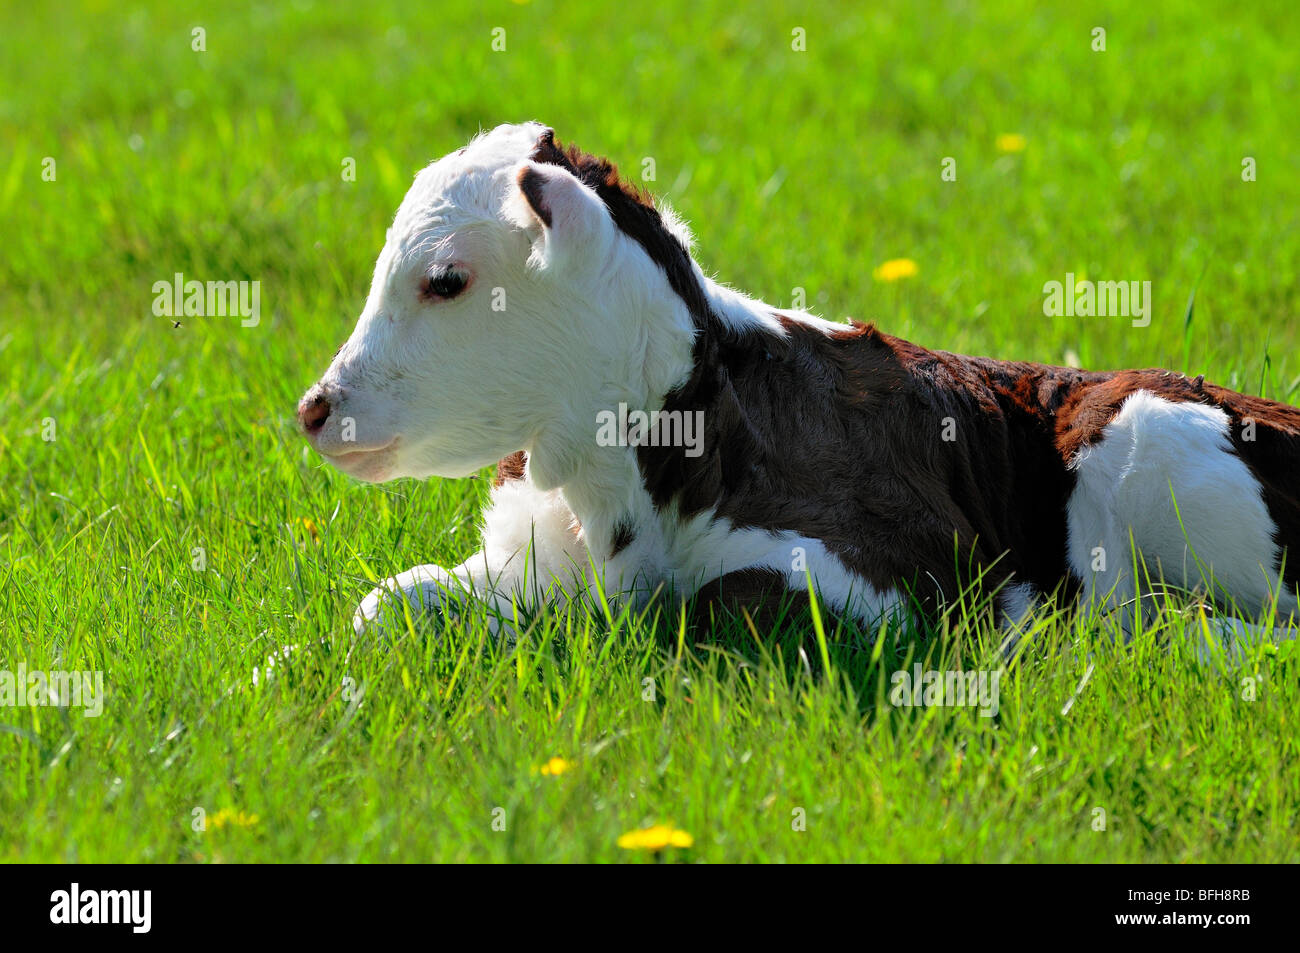 Six day old hereford calf in grassy field in Glenora, BC. Stock Photo